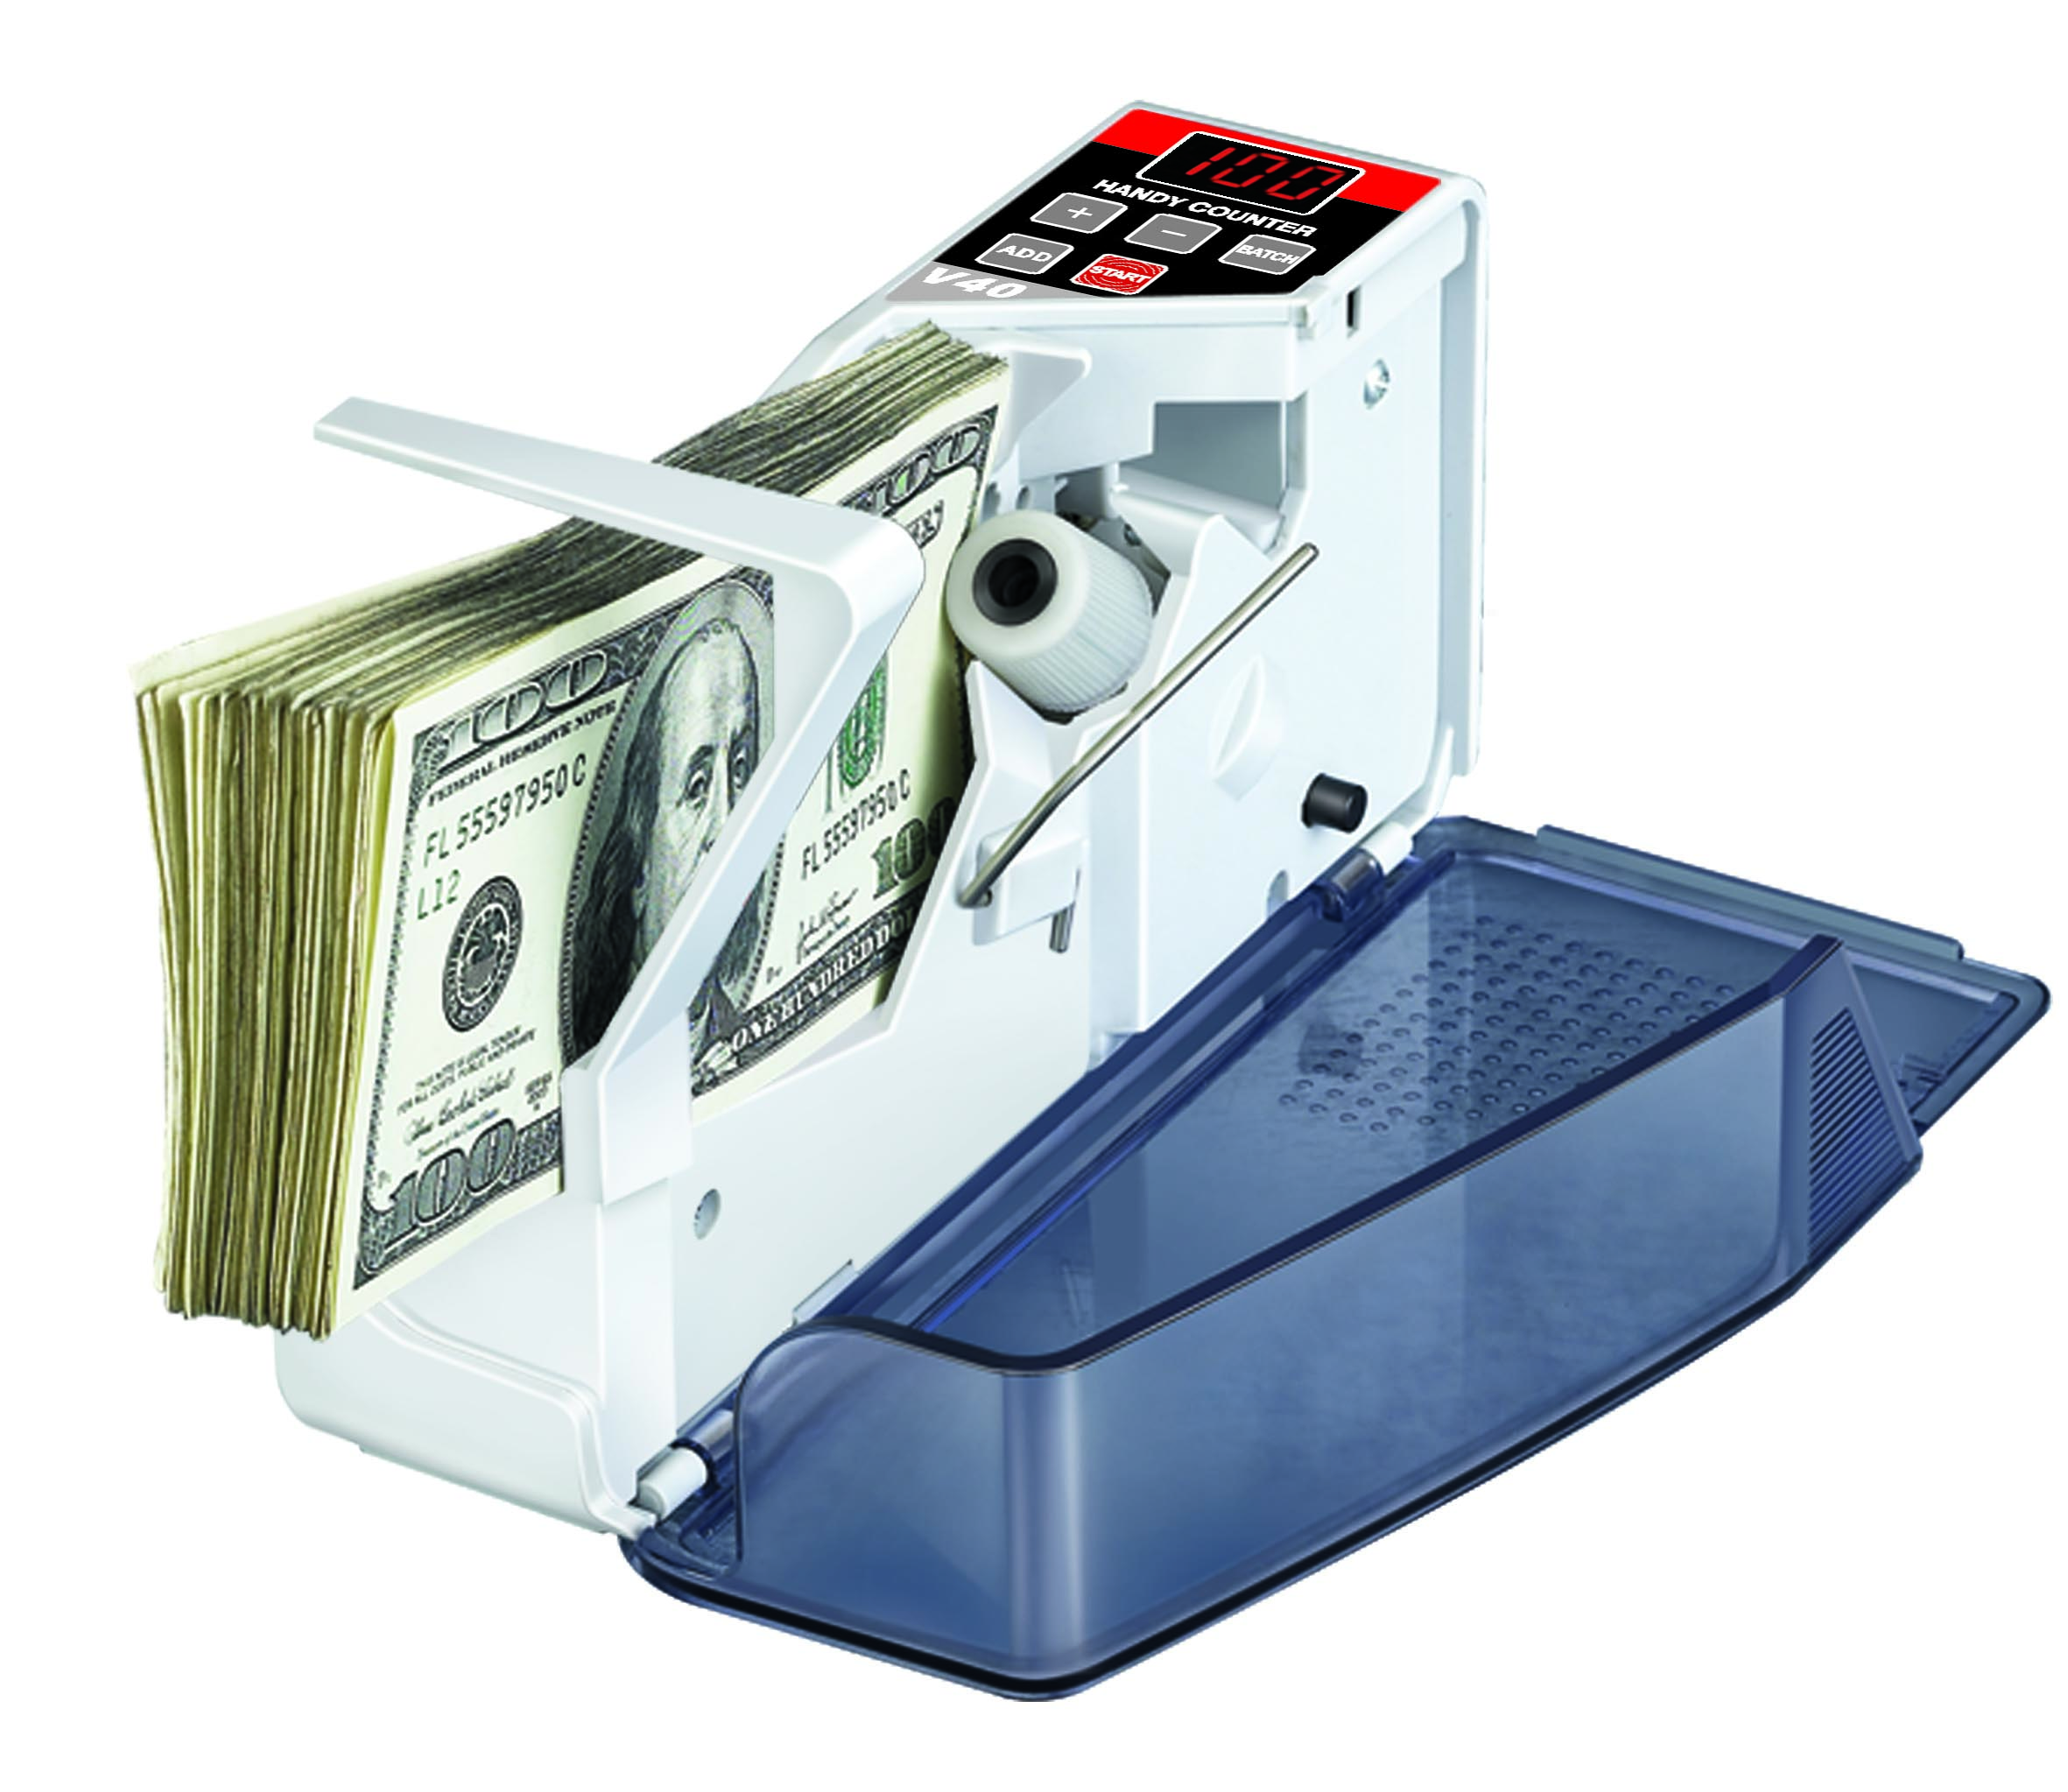 Contador Handheld misturado eletrônico da máquina de faturamento V40 da papelada do dinheiro de papel